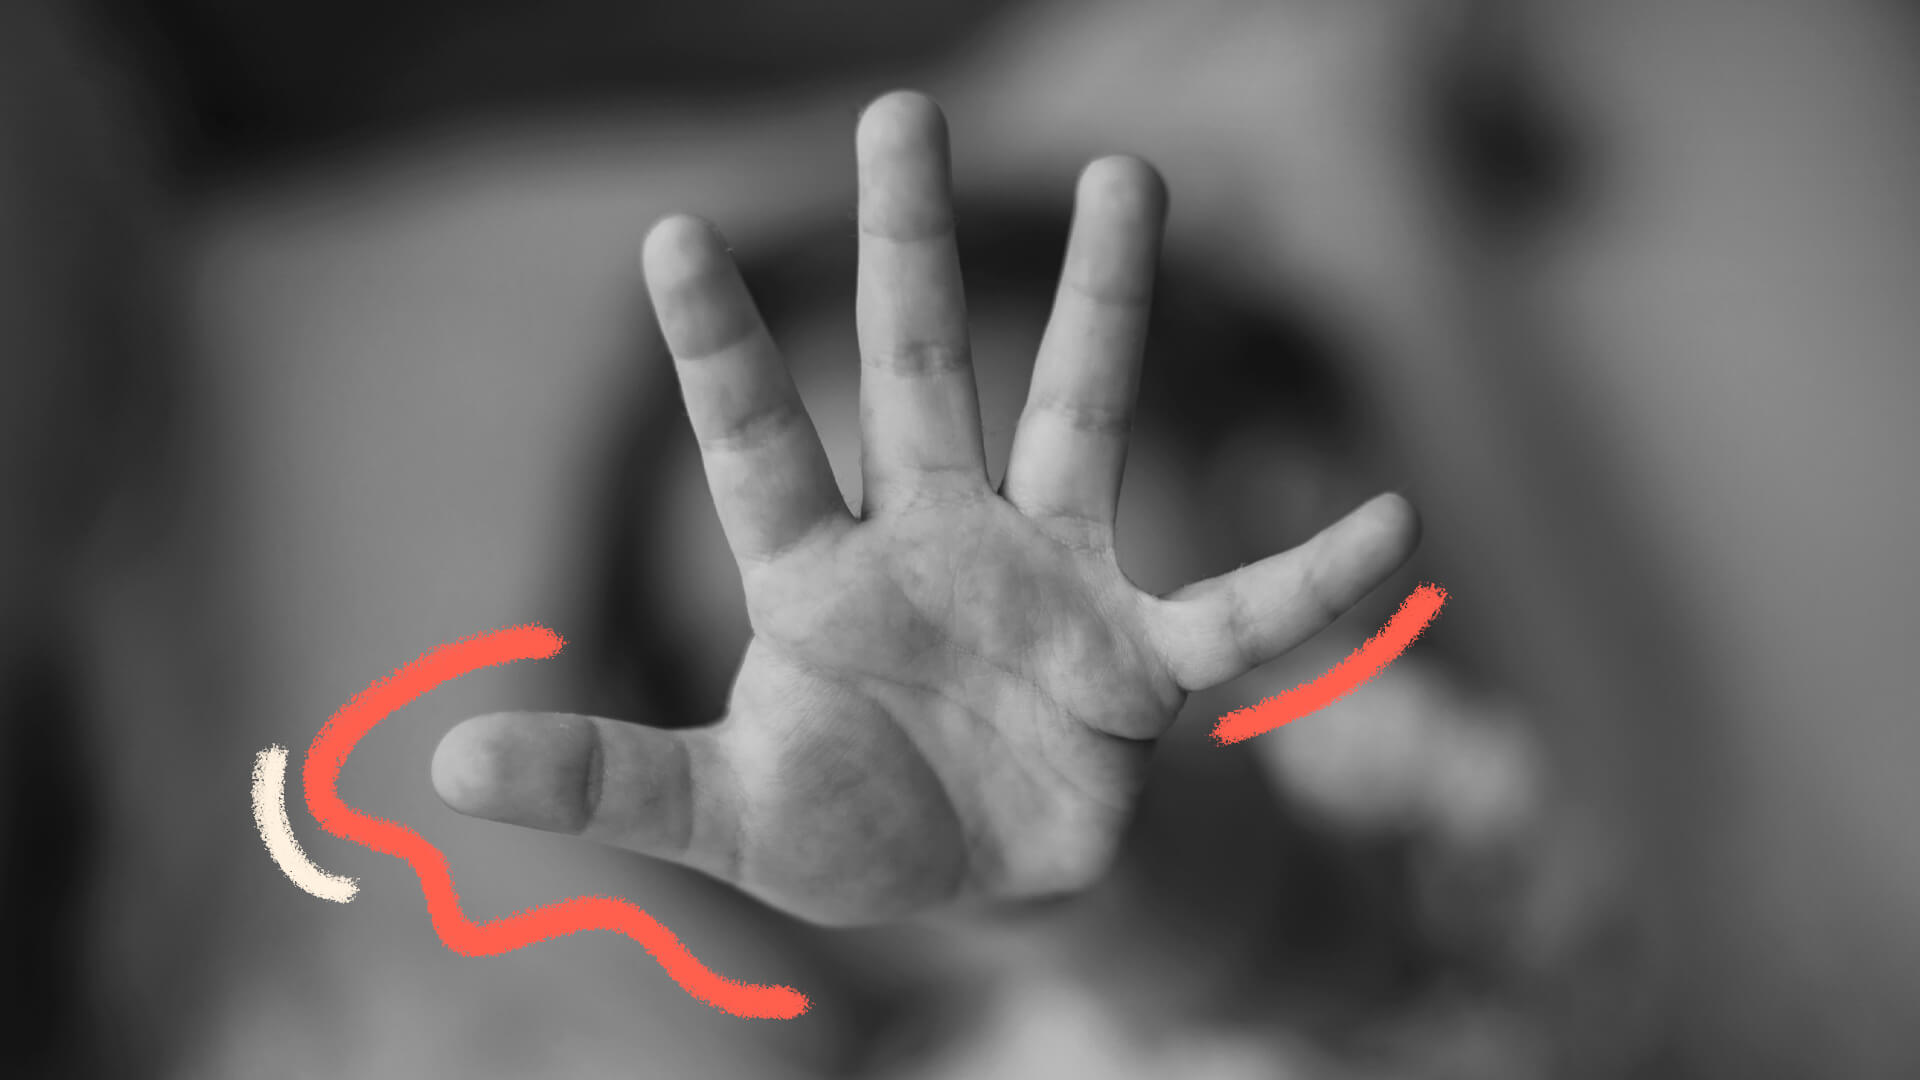 Foto em preto e branco de uma mão de criança espalmada, em sinal de pare. A matéria é sobre violência sexual infantil.